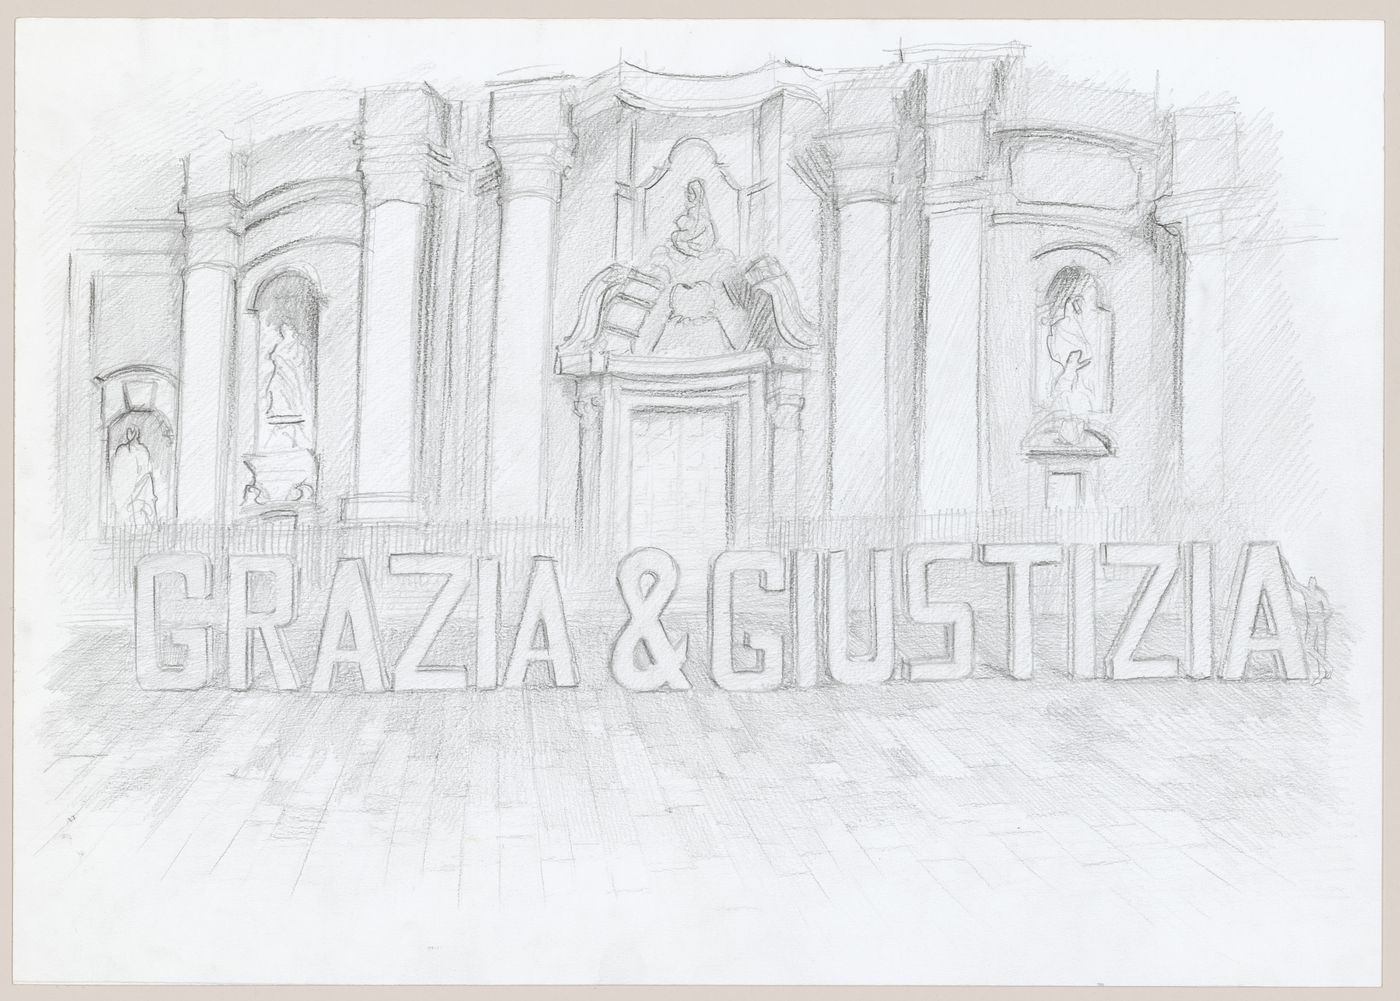 Perspective for the installation Grazia & Giustizia